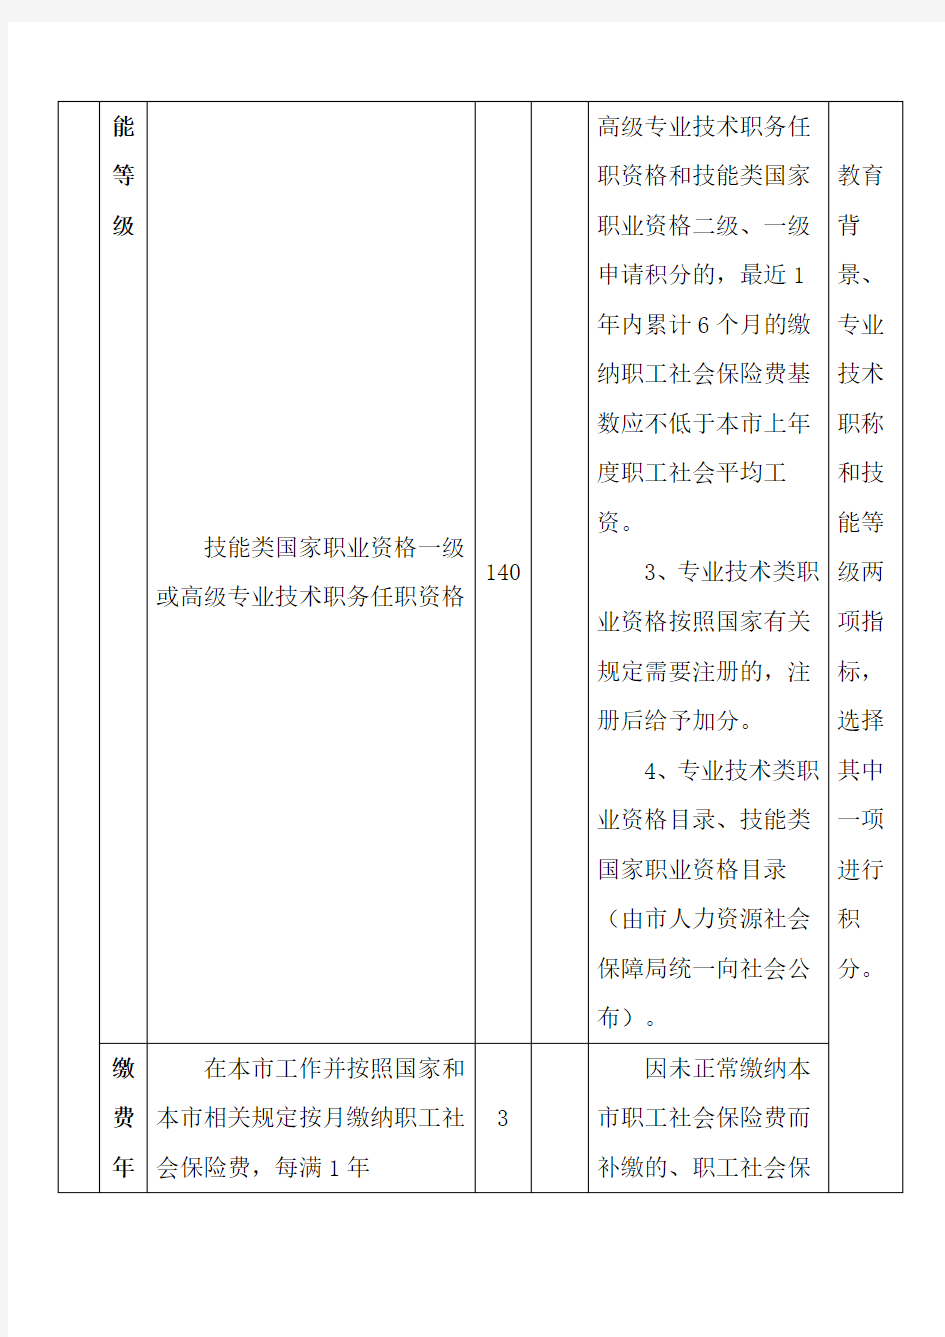 《上海市居住证》积分指标及分值表(单位分)